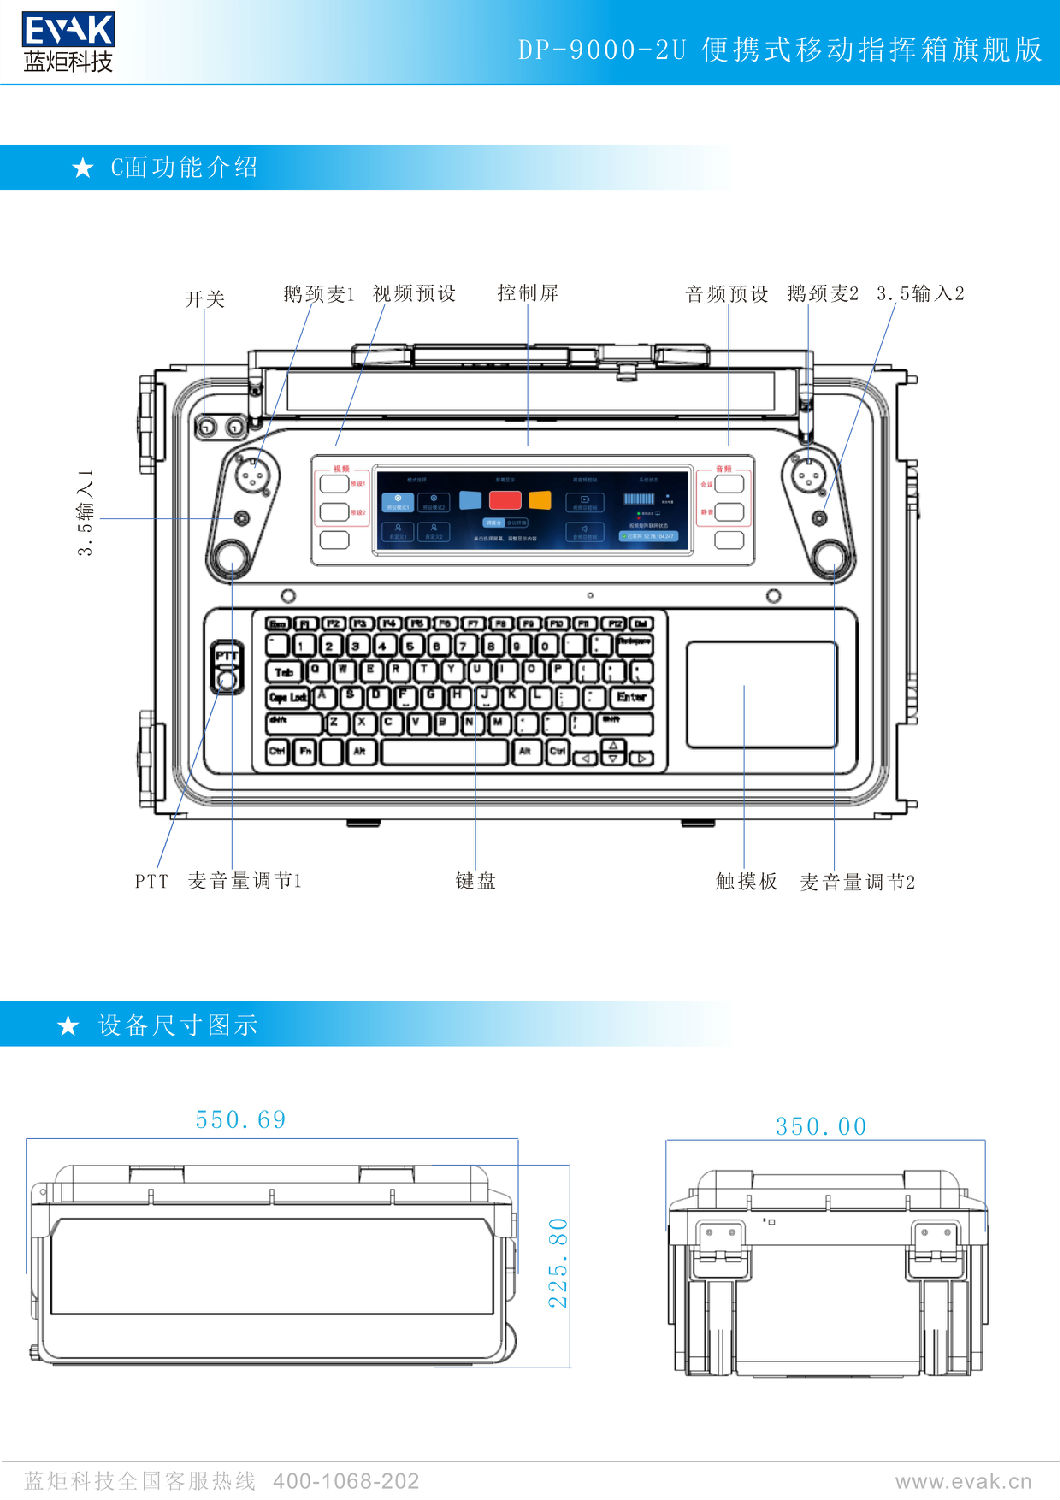 DP-9000-2U便携式移动指挥箱旗舰版（简易版）-5.jpg